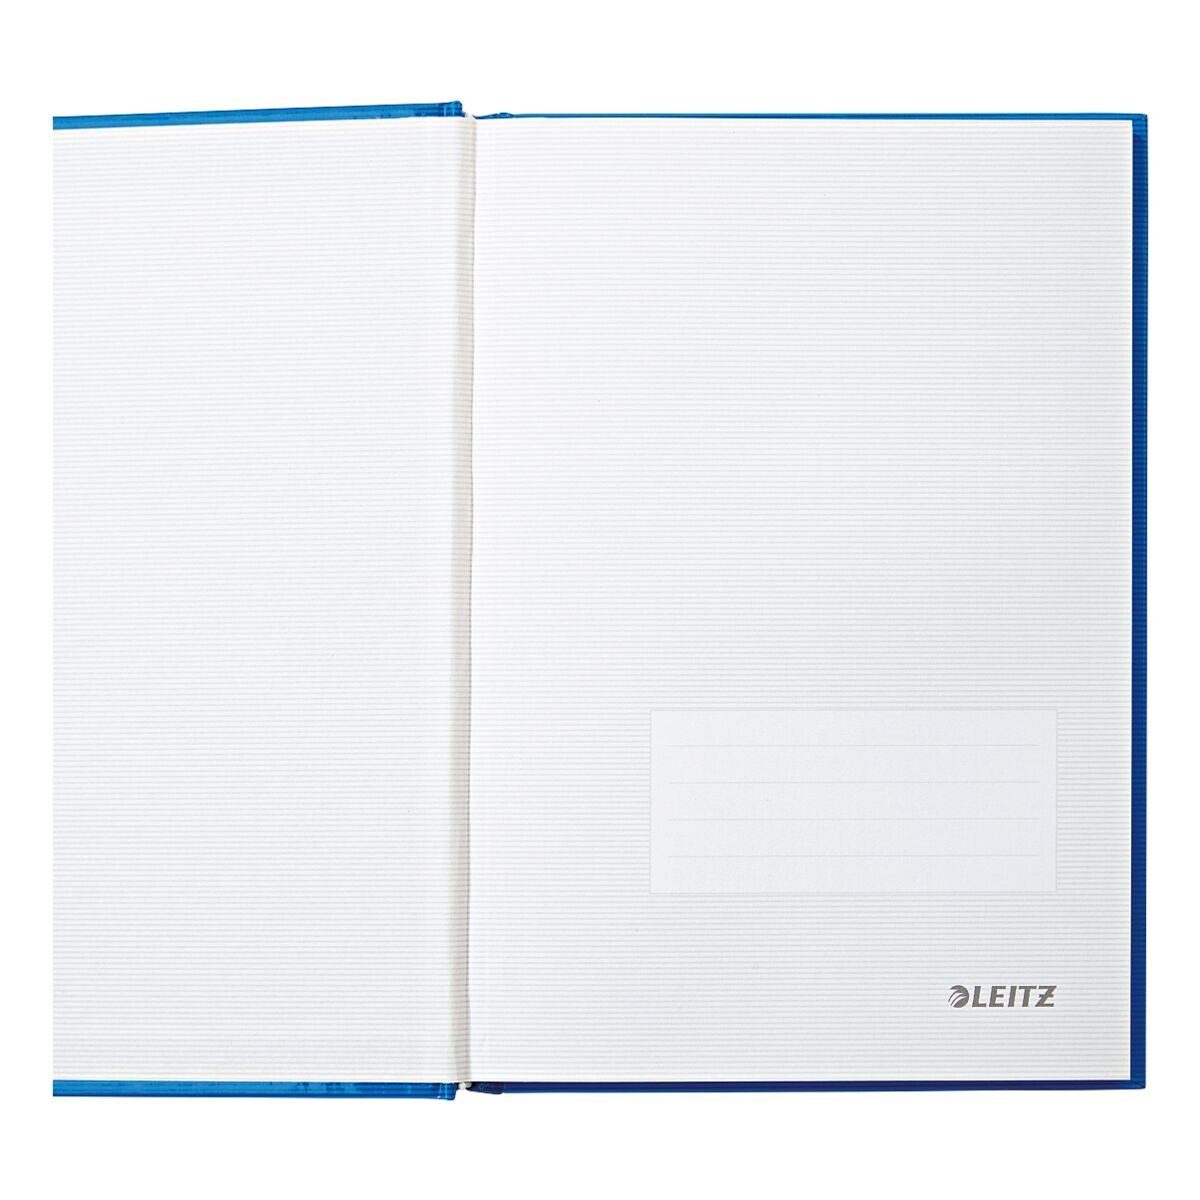 LEITZ Notizbuch Solid Introseiten, Hardcover 4666, mit hellblau kariert